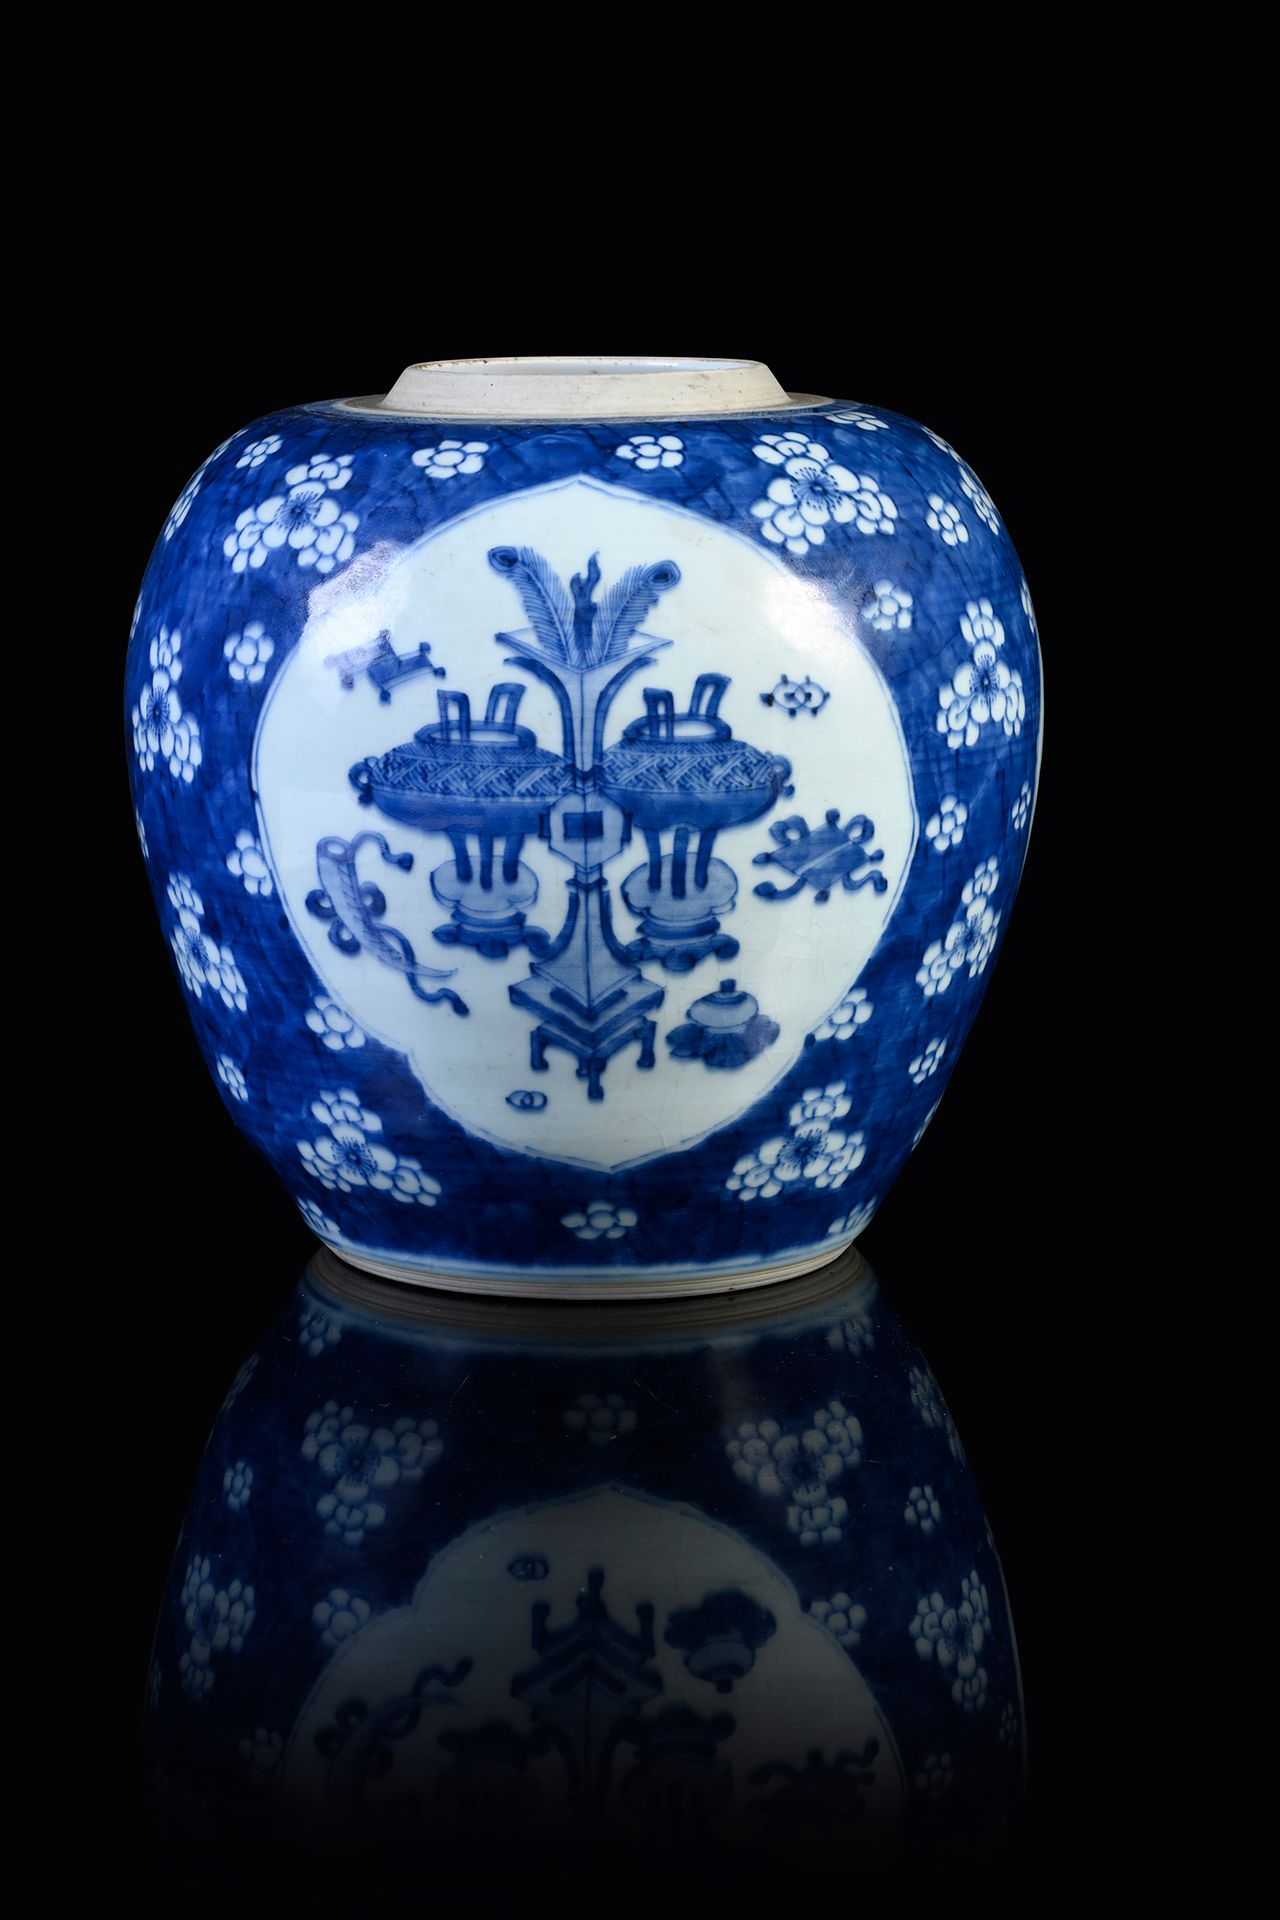 CHINE, XVIIIe-XIXe siècle Jarra ovoide de porcelana con decoración en azul y bla&hellip;